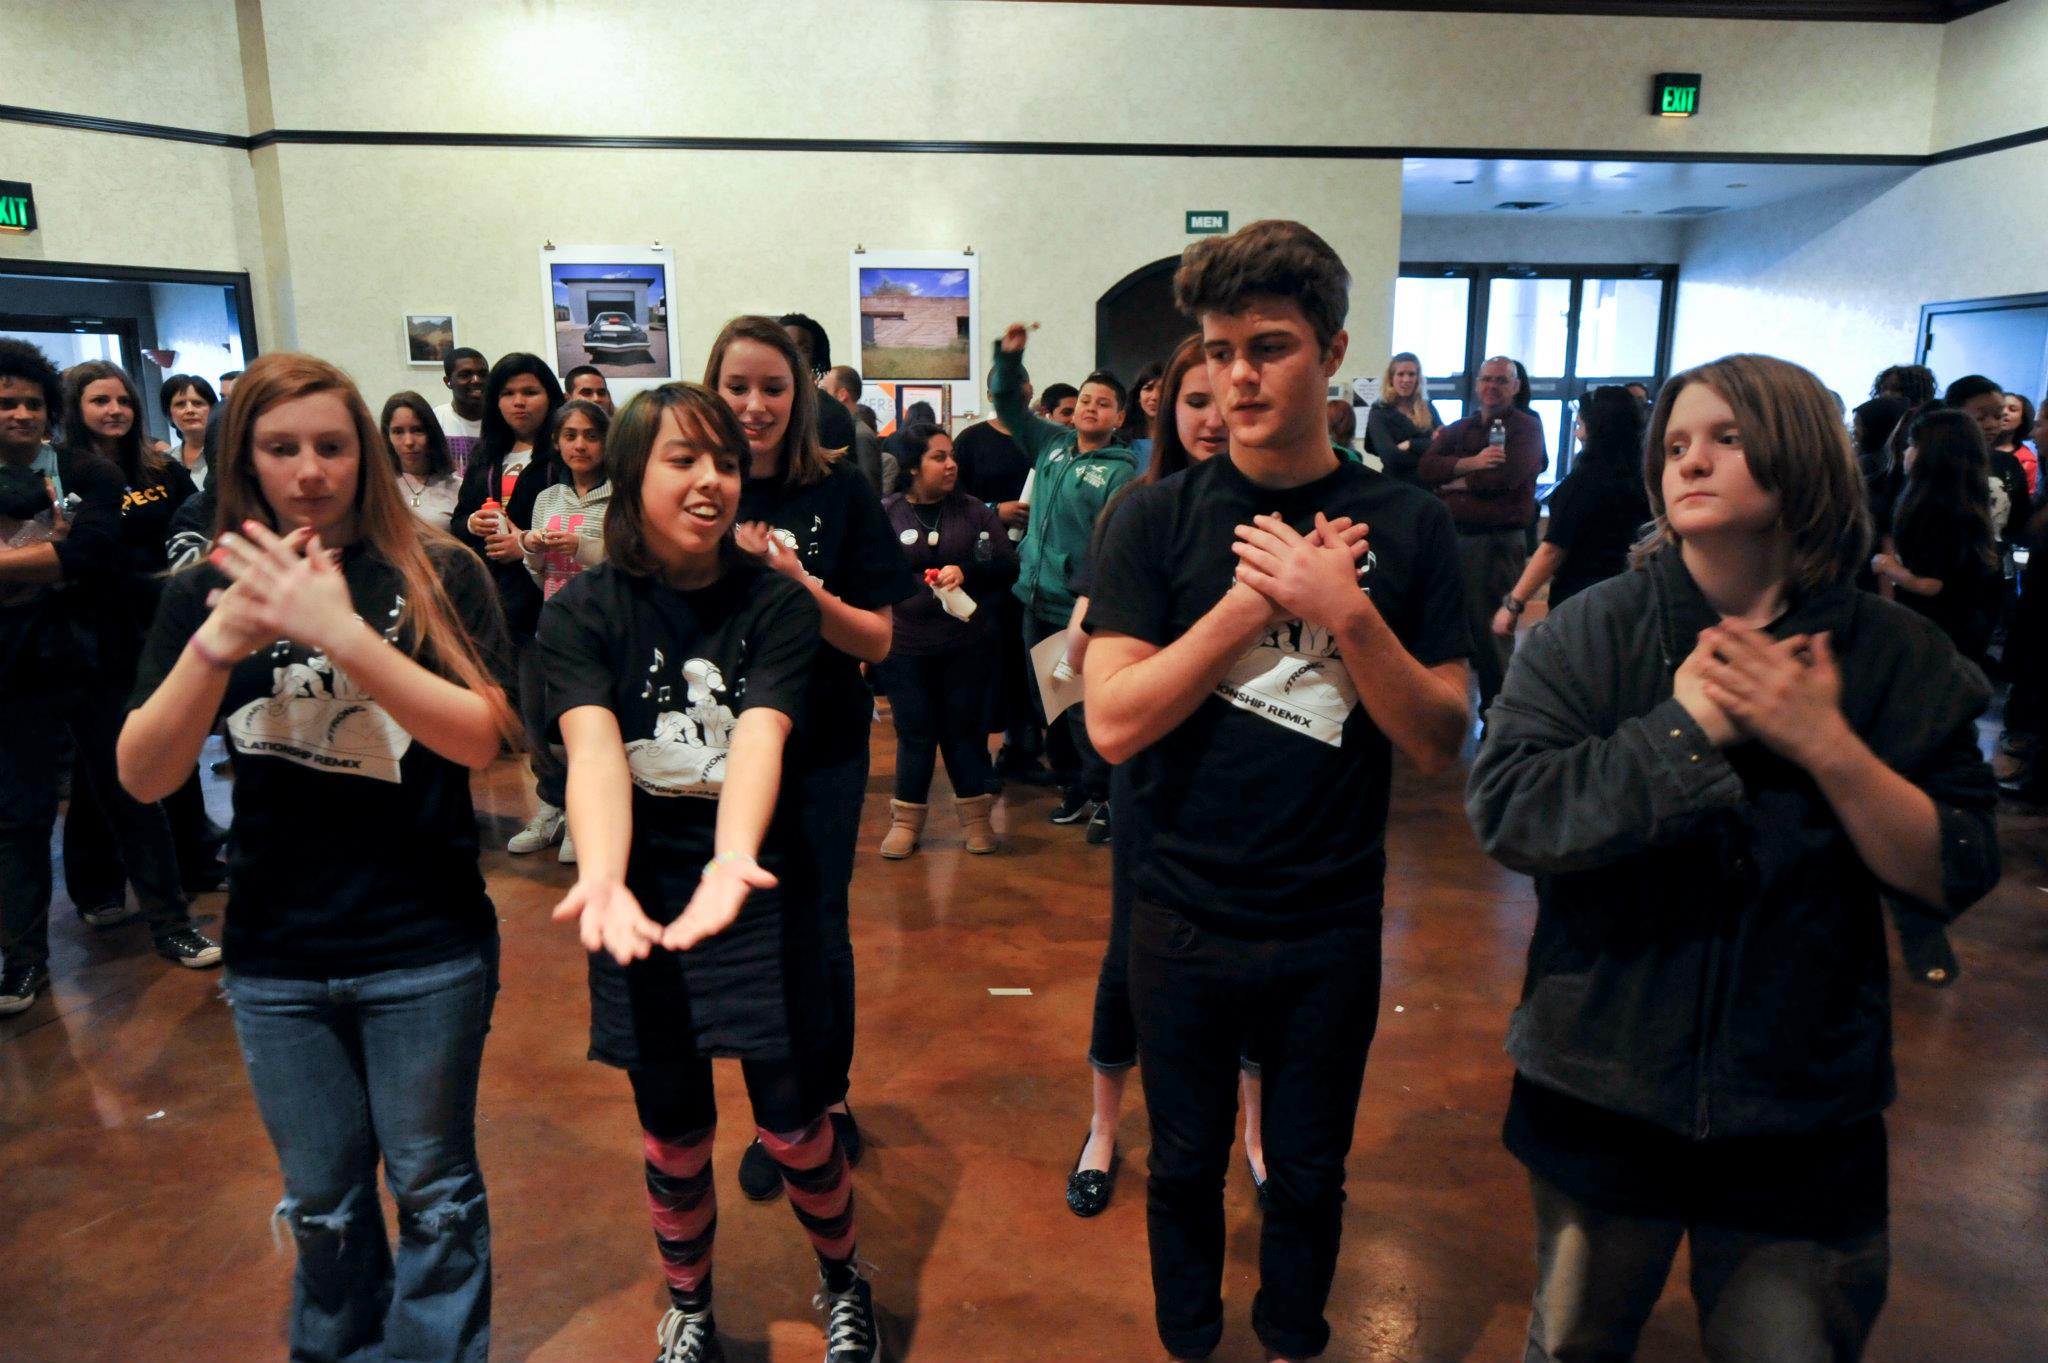 Descripción de la imagen: Una foto de una habitación llena de adolescentes practicando una rutina de baile.